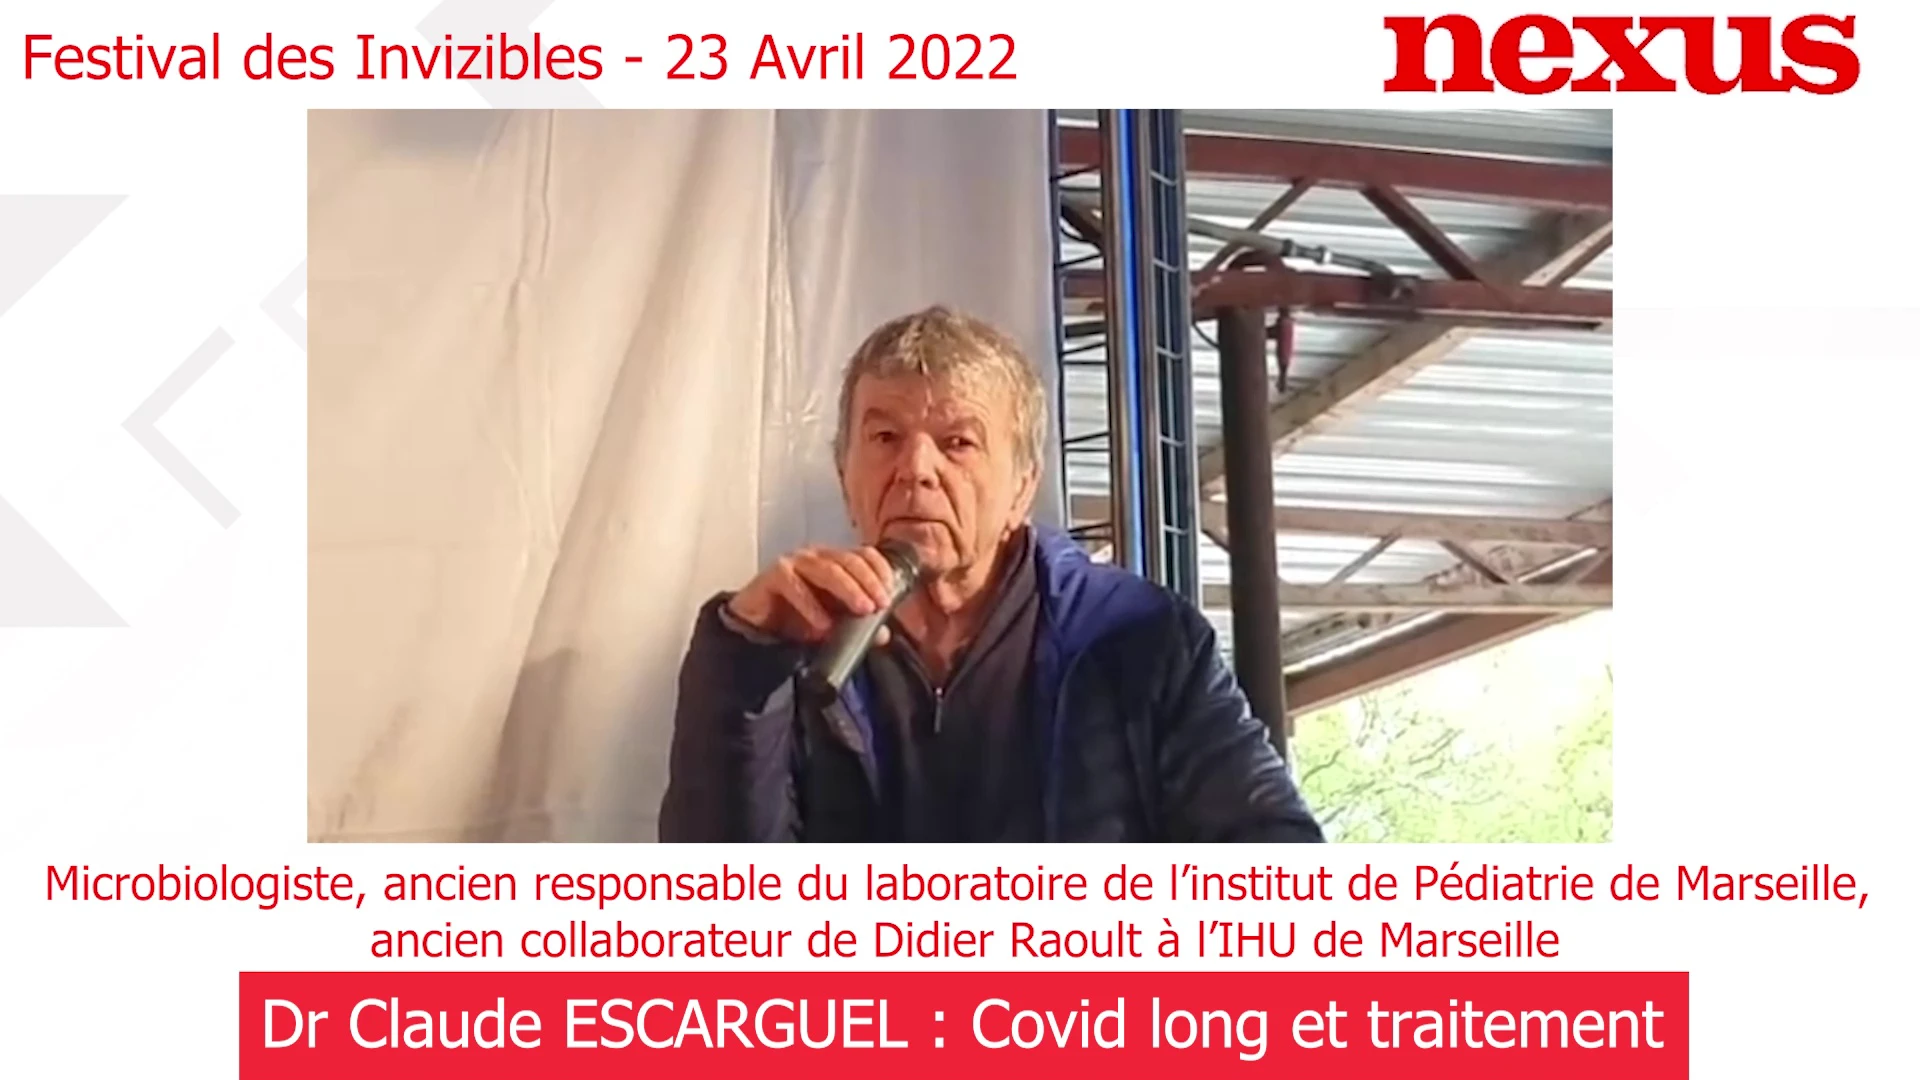 Festival des Invizibles 23/04/2022 – Dr Claude Escarguel : Covid long et traitement